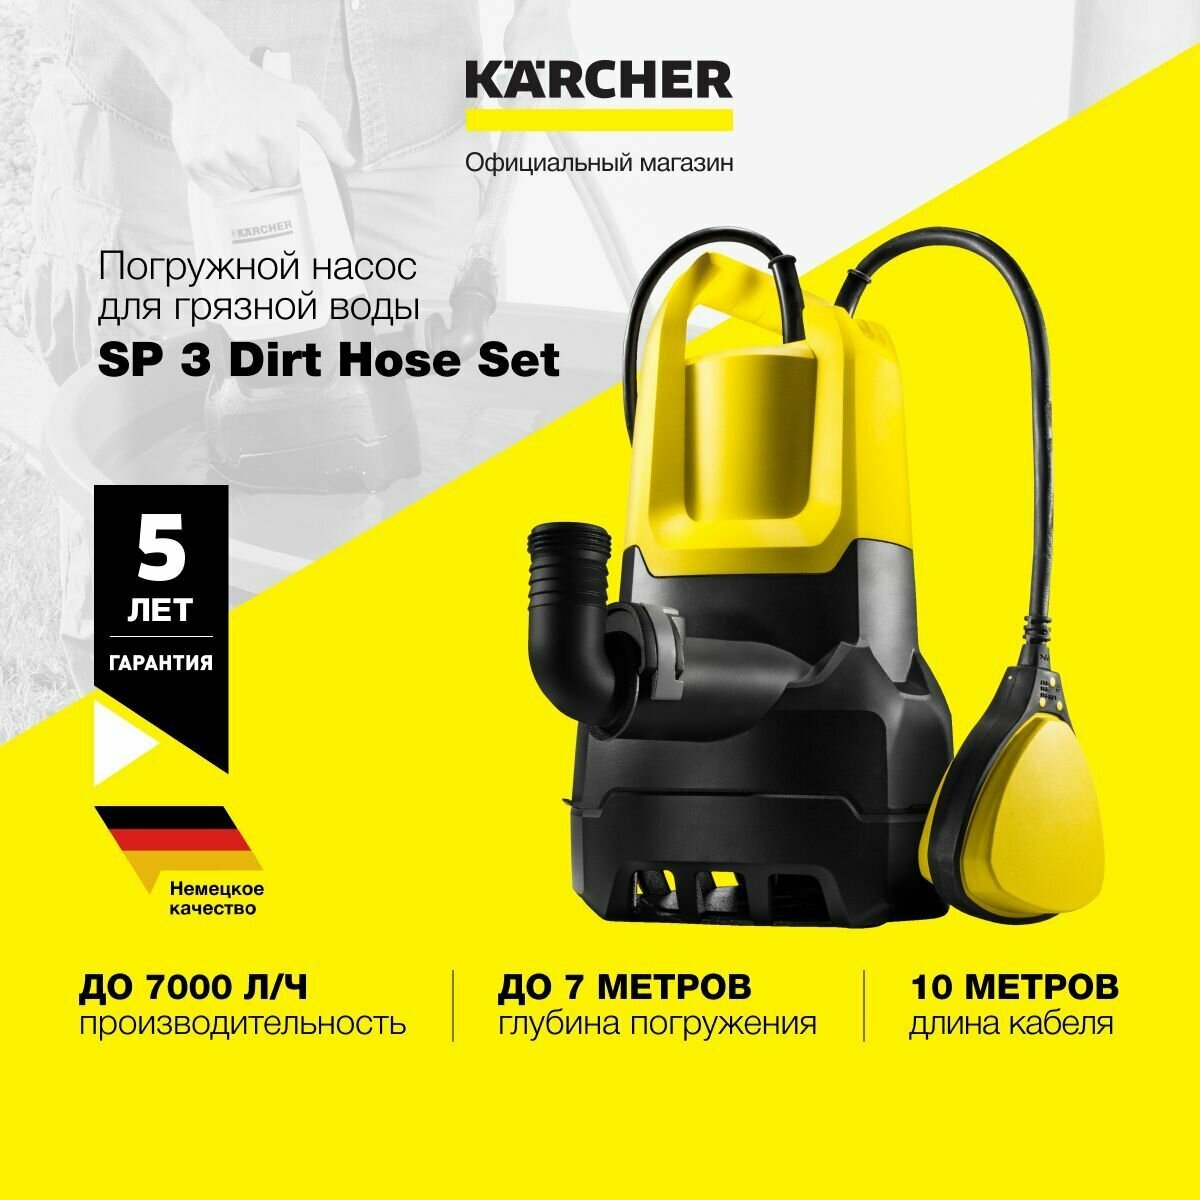 Погружной насос для грязной воды Karcher SP 3 Dirt Hose Set 1.645-535.0, дренажный